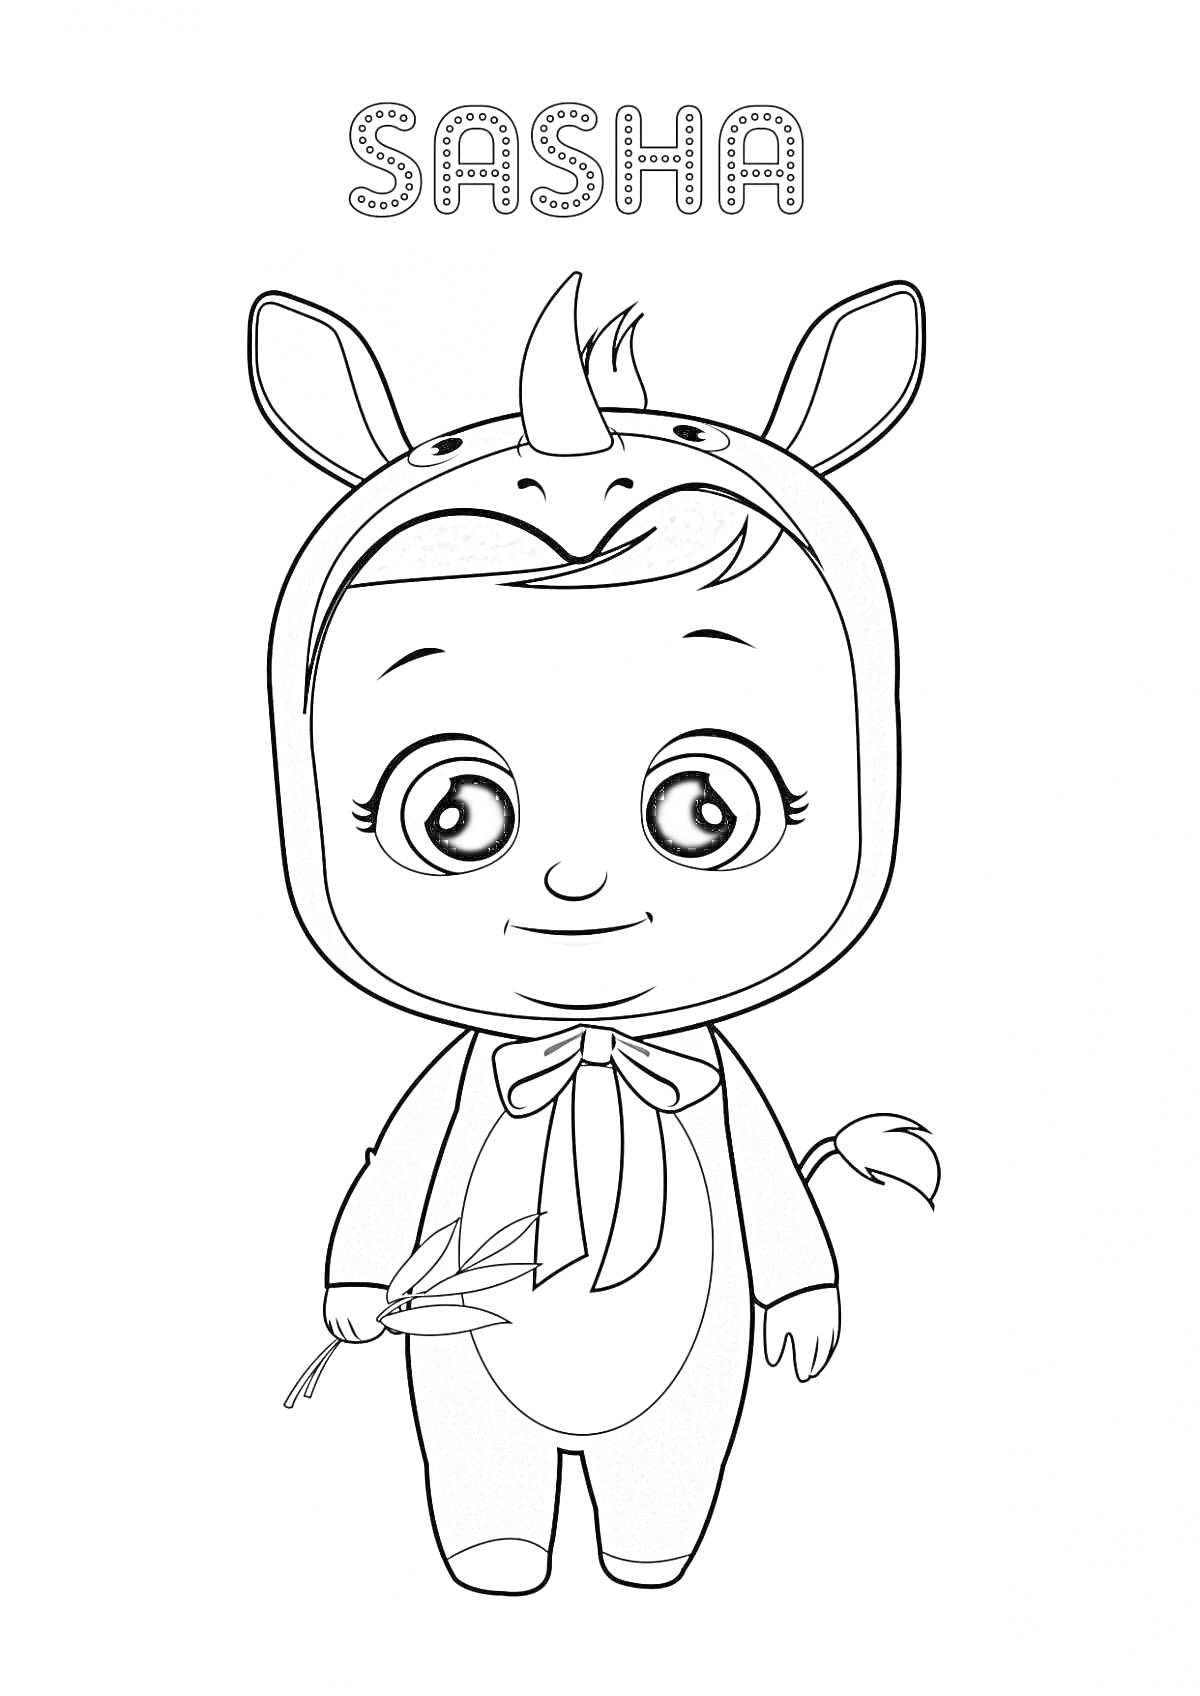 Раскраска Малыш в костюме животного с рогом и ушками, держит веточку, крупные глаза, улыбка, надпись 